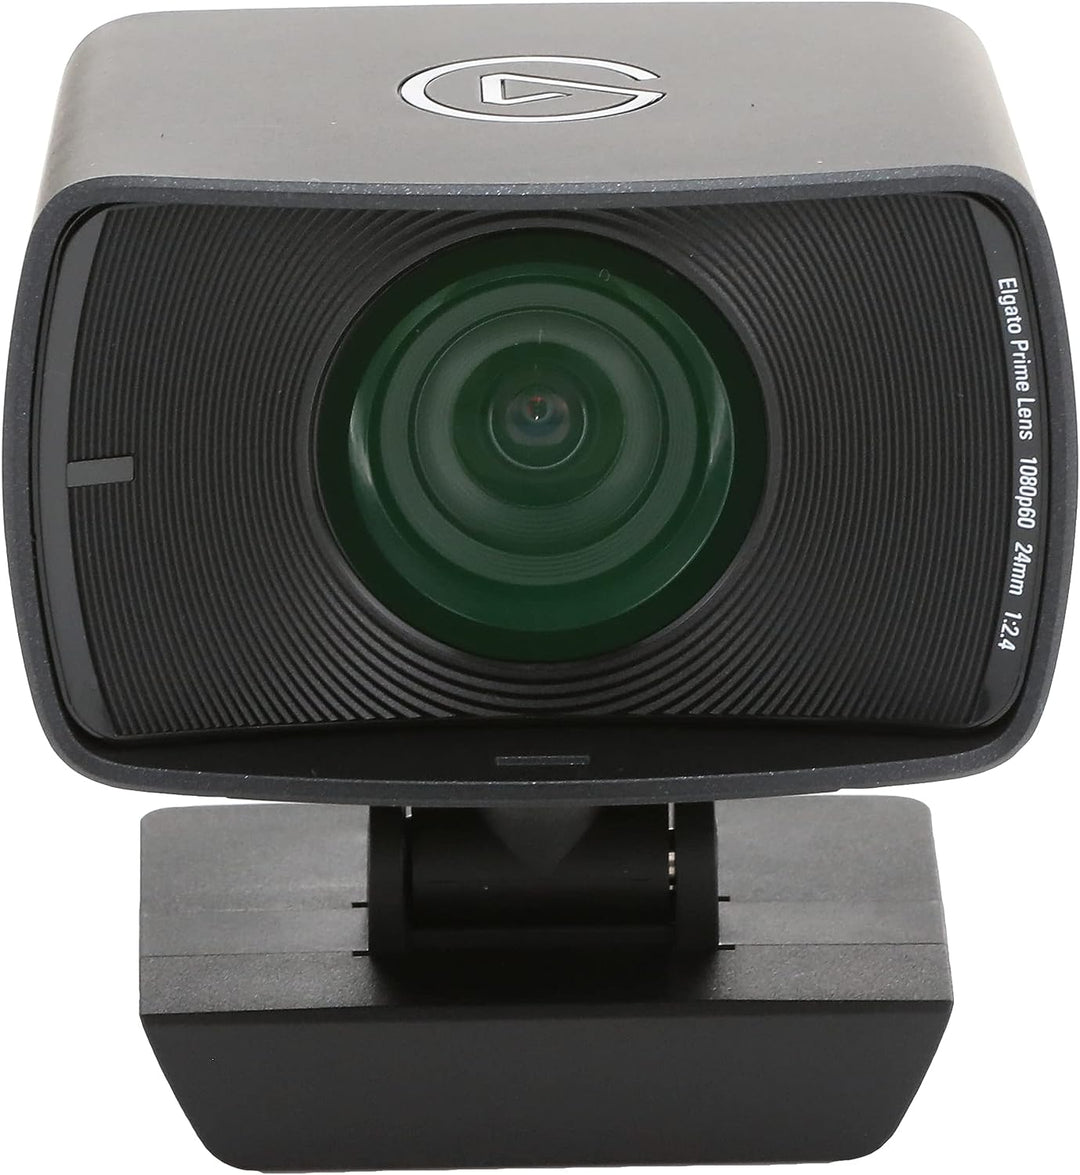 Elgato | Facecam True FHD Premium Webcam | 10WAA9901